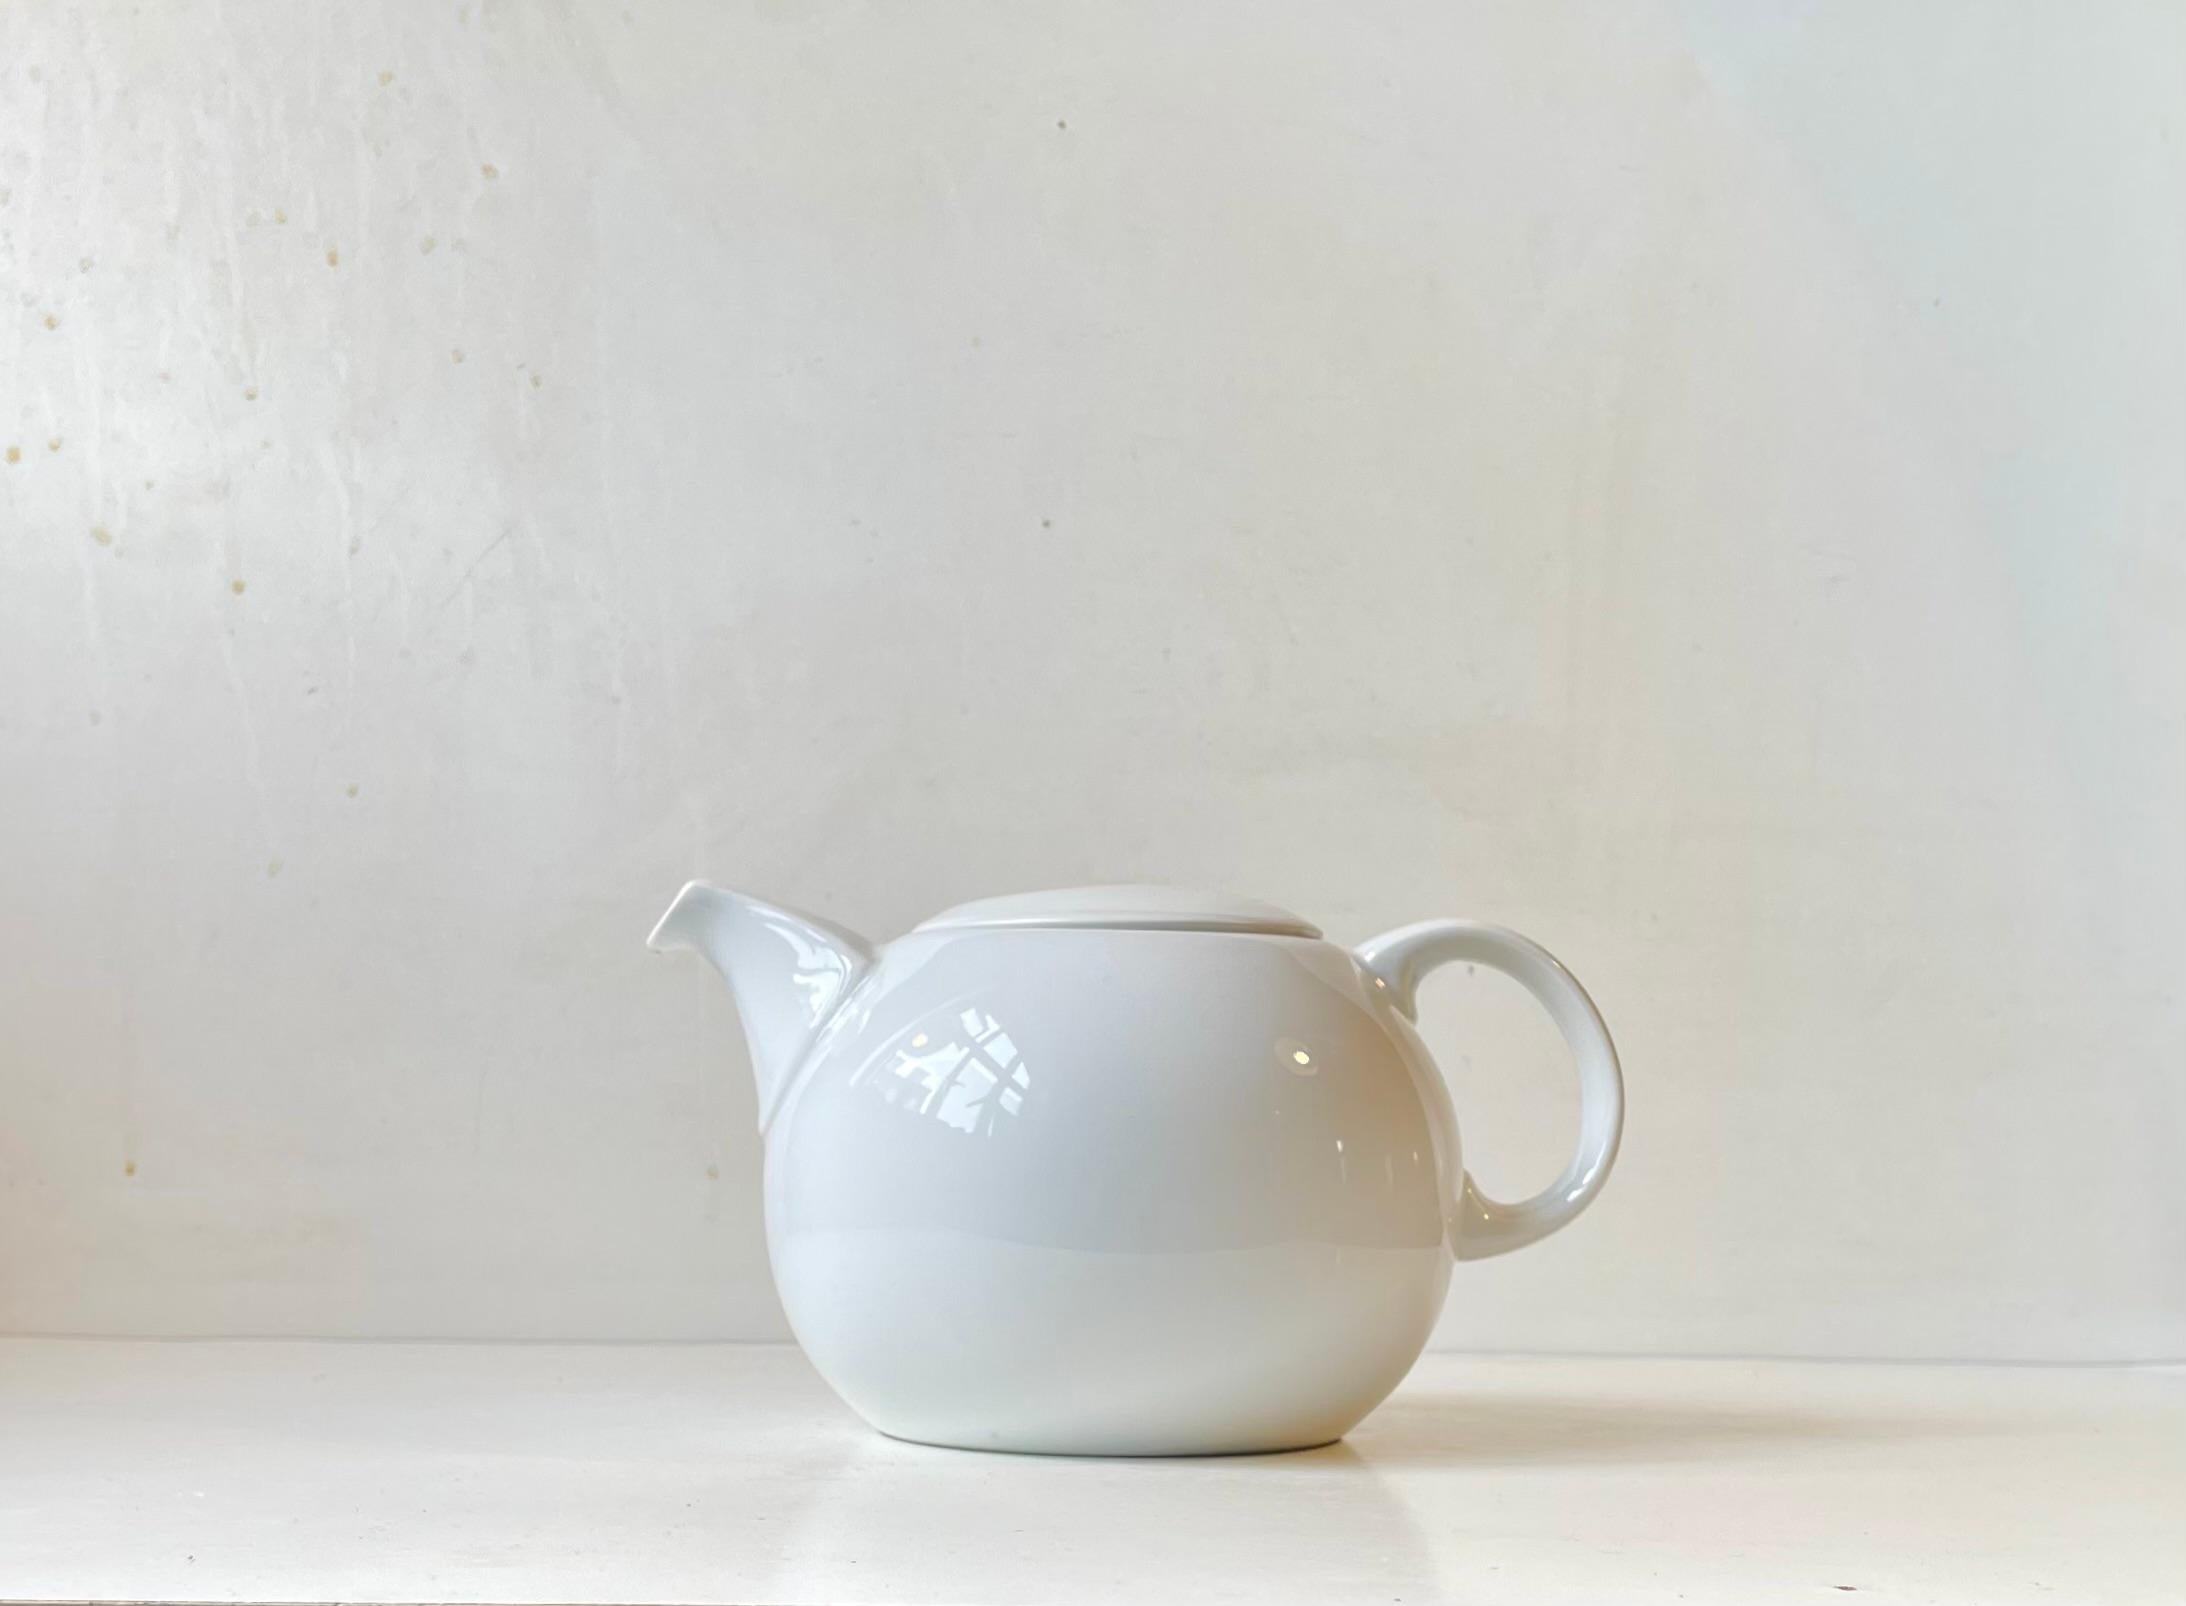 Skandinavische moderne Teekanne namens Korinth, entworfen von Martin Hunt Corinth für Bing & Grøndahl - B&G und später Royal Copenhagen. Es ist sehr selten in dieser komplett weißen Konfiguration. Sie besteht aus weiß glasiertem Porzellan und hat